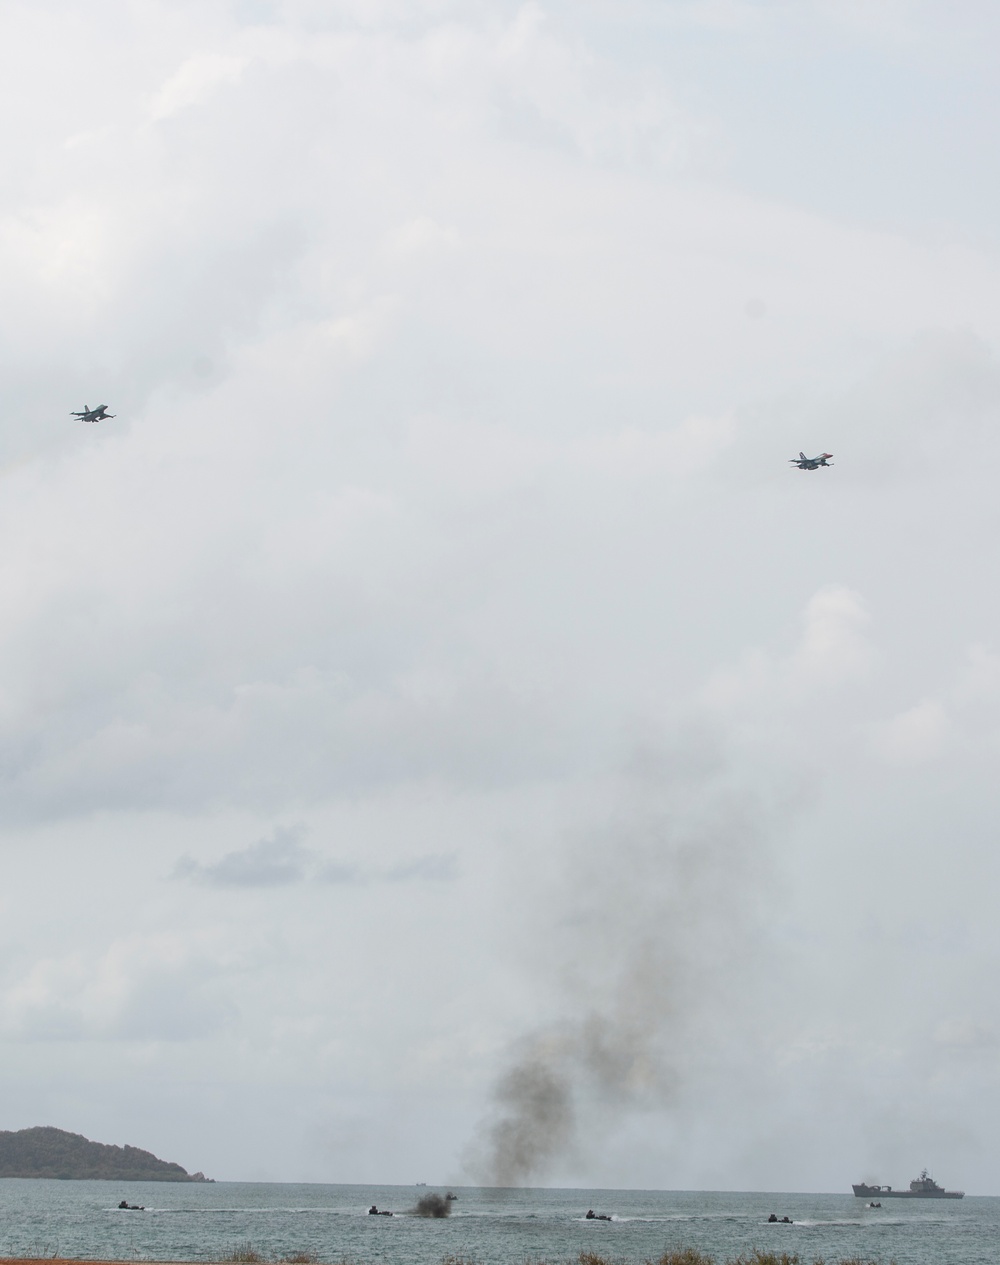 Cobra Gold 20: US, Royal Thai militaries conduct amphibious beach landing